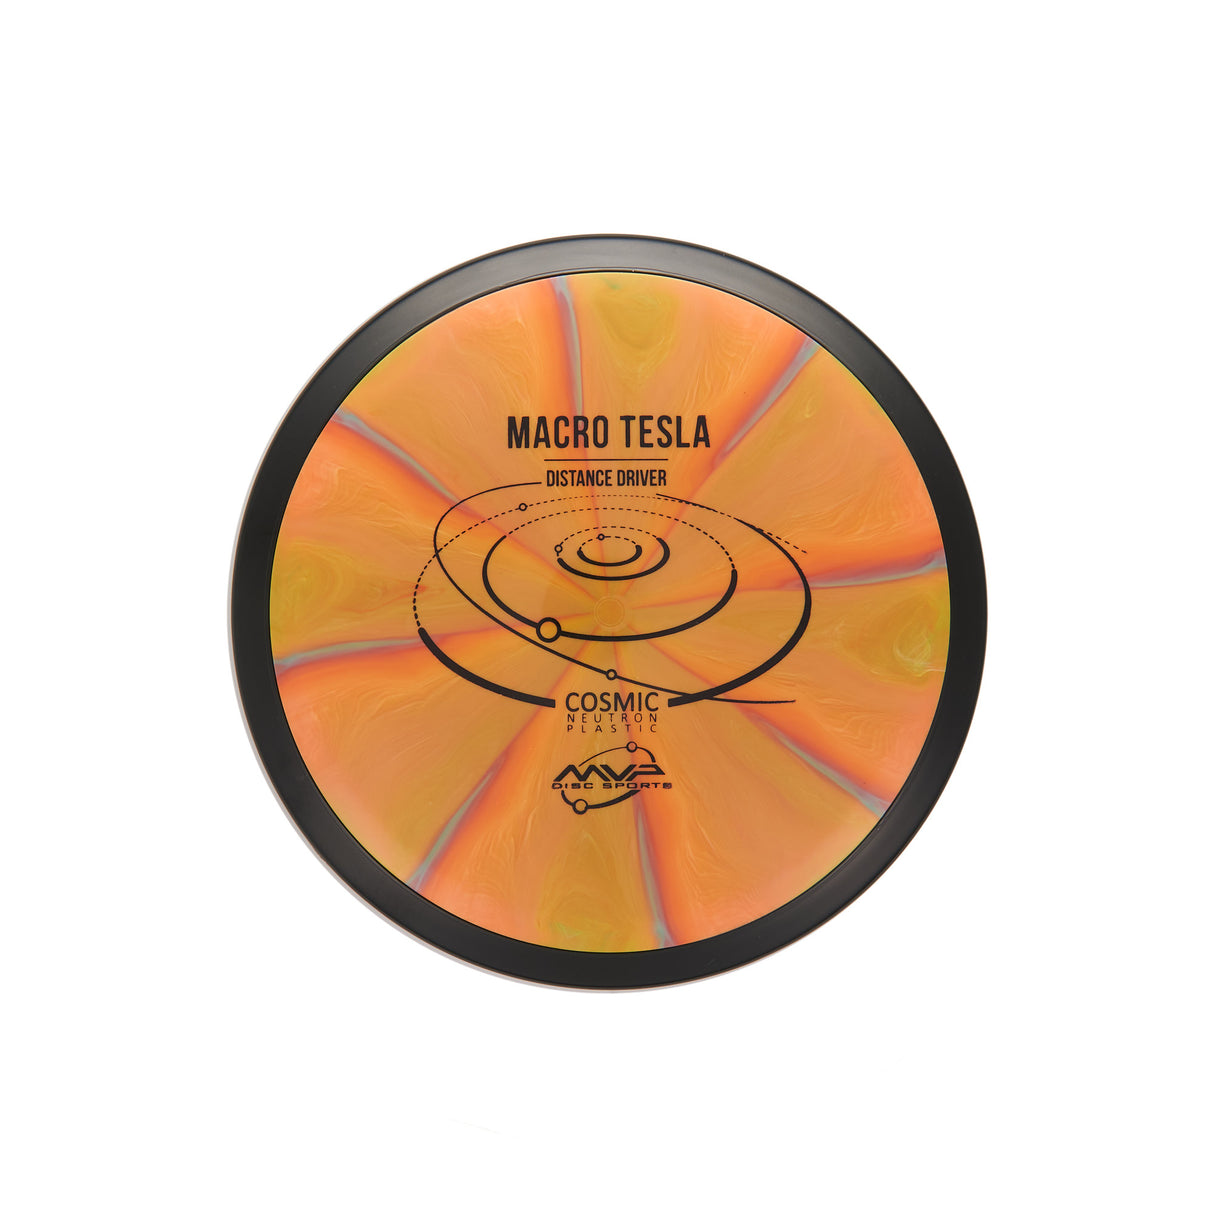 MVP Macro Tesla - Cosmic Neutron 81g | Style 0008